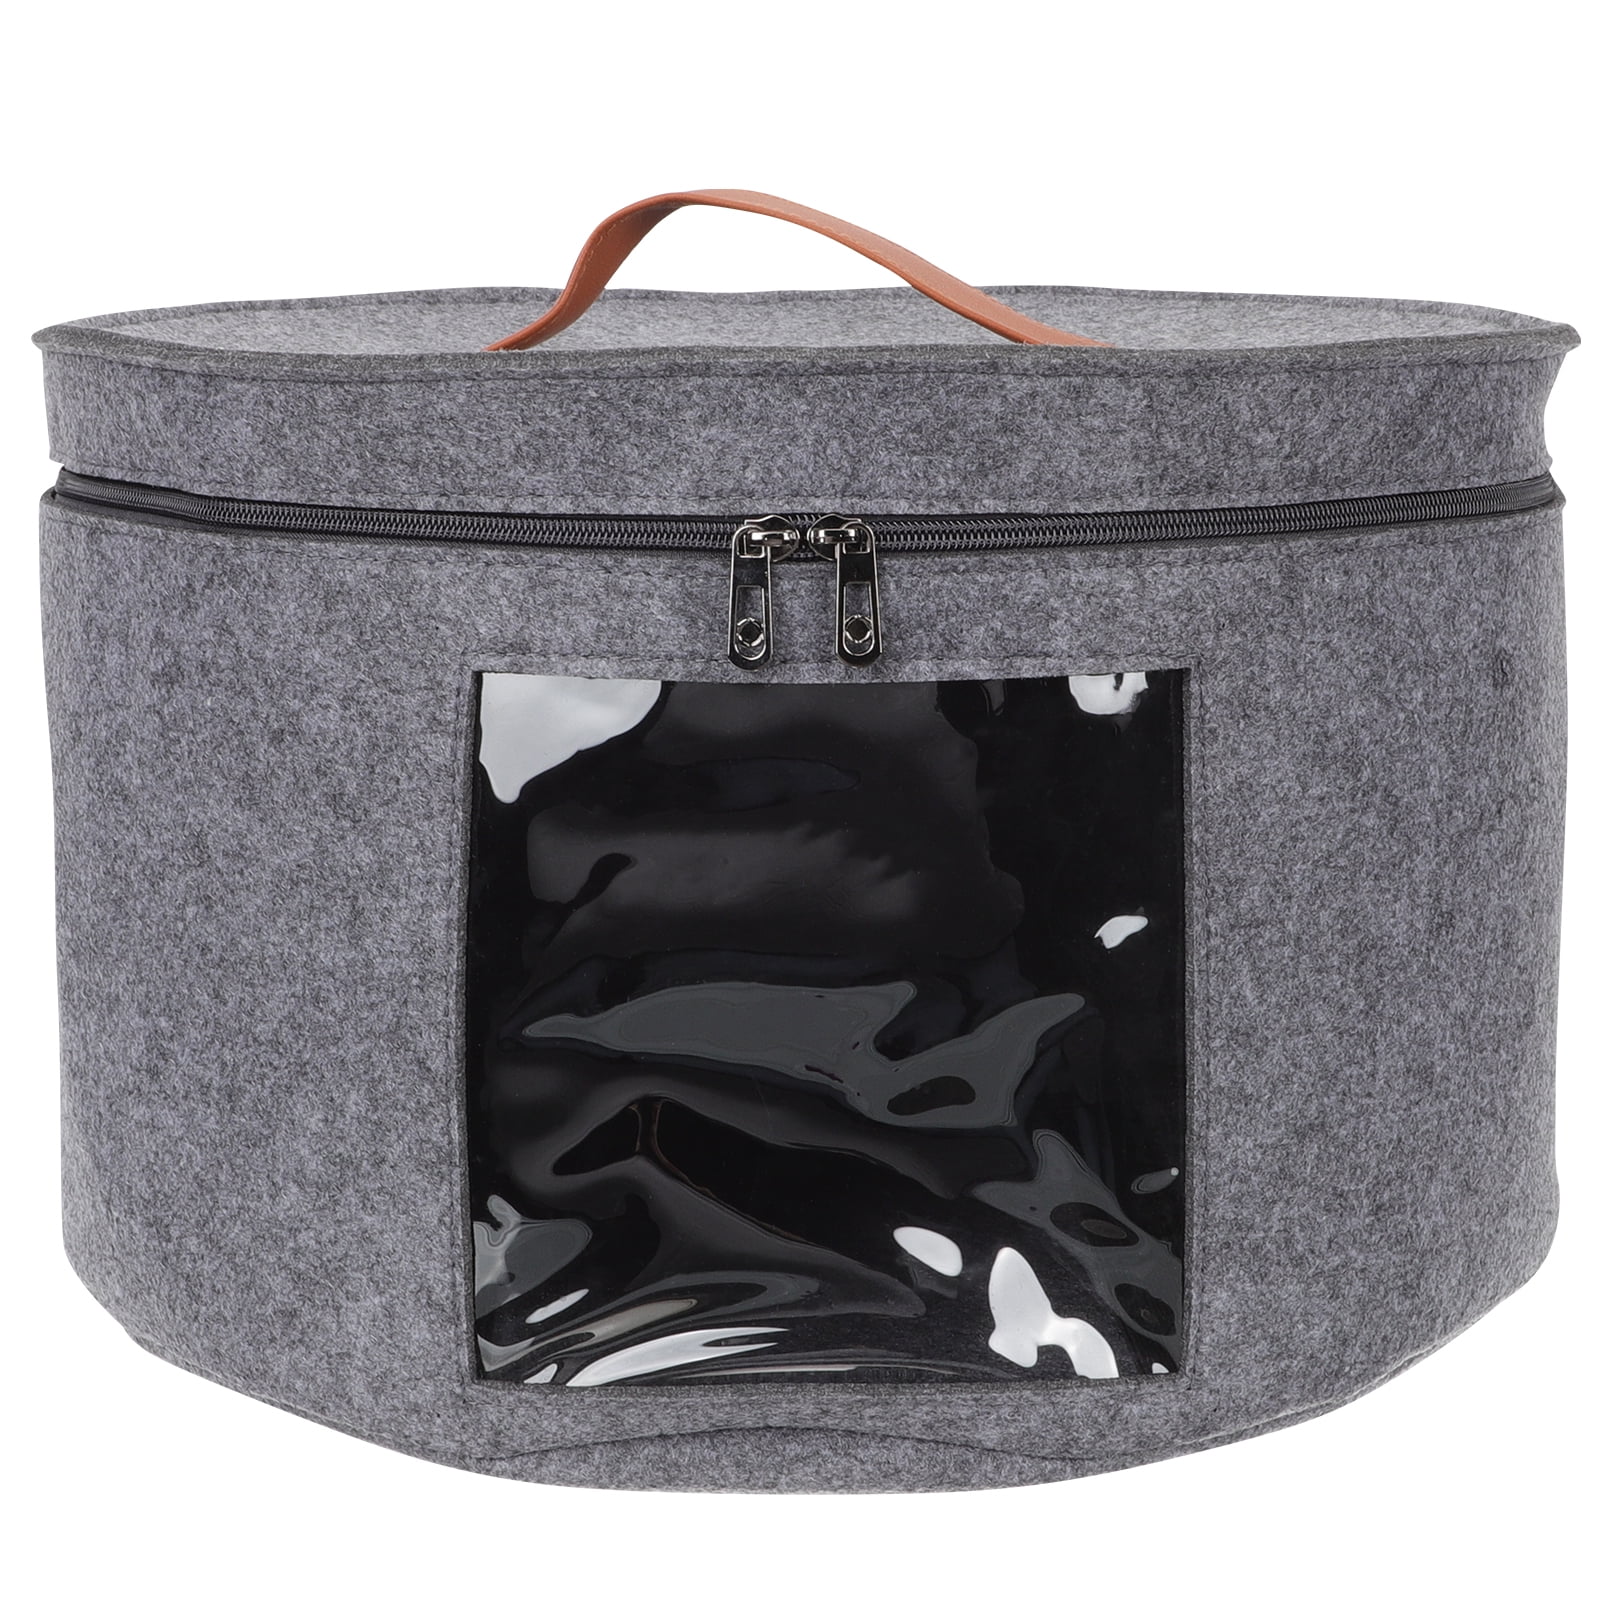 Hat box bags - Bag at You